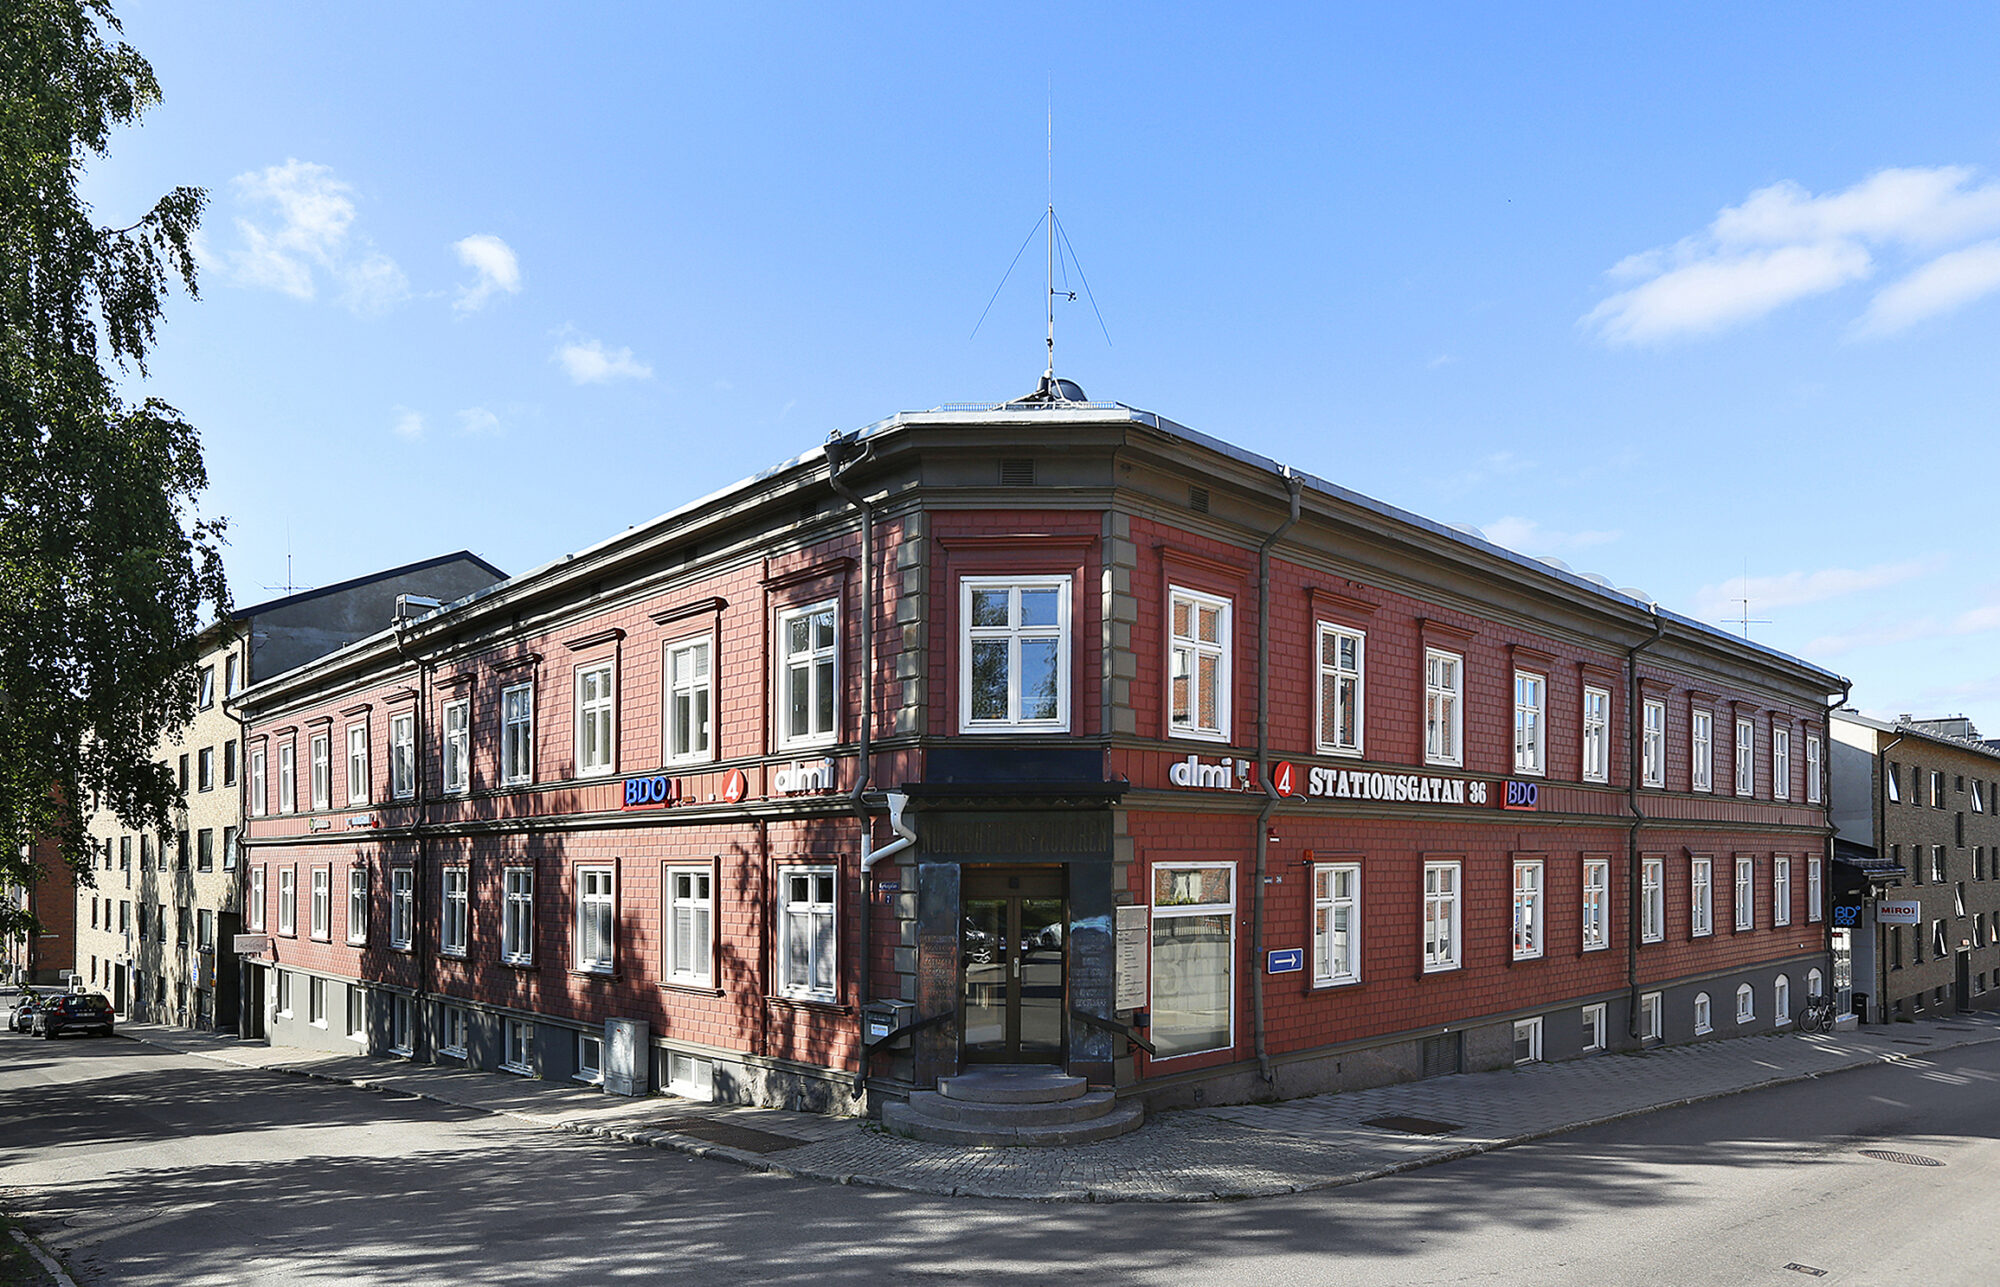 LBF - Luleå Bostad & Förvaltning AB